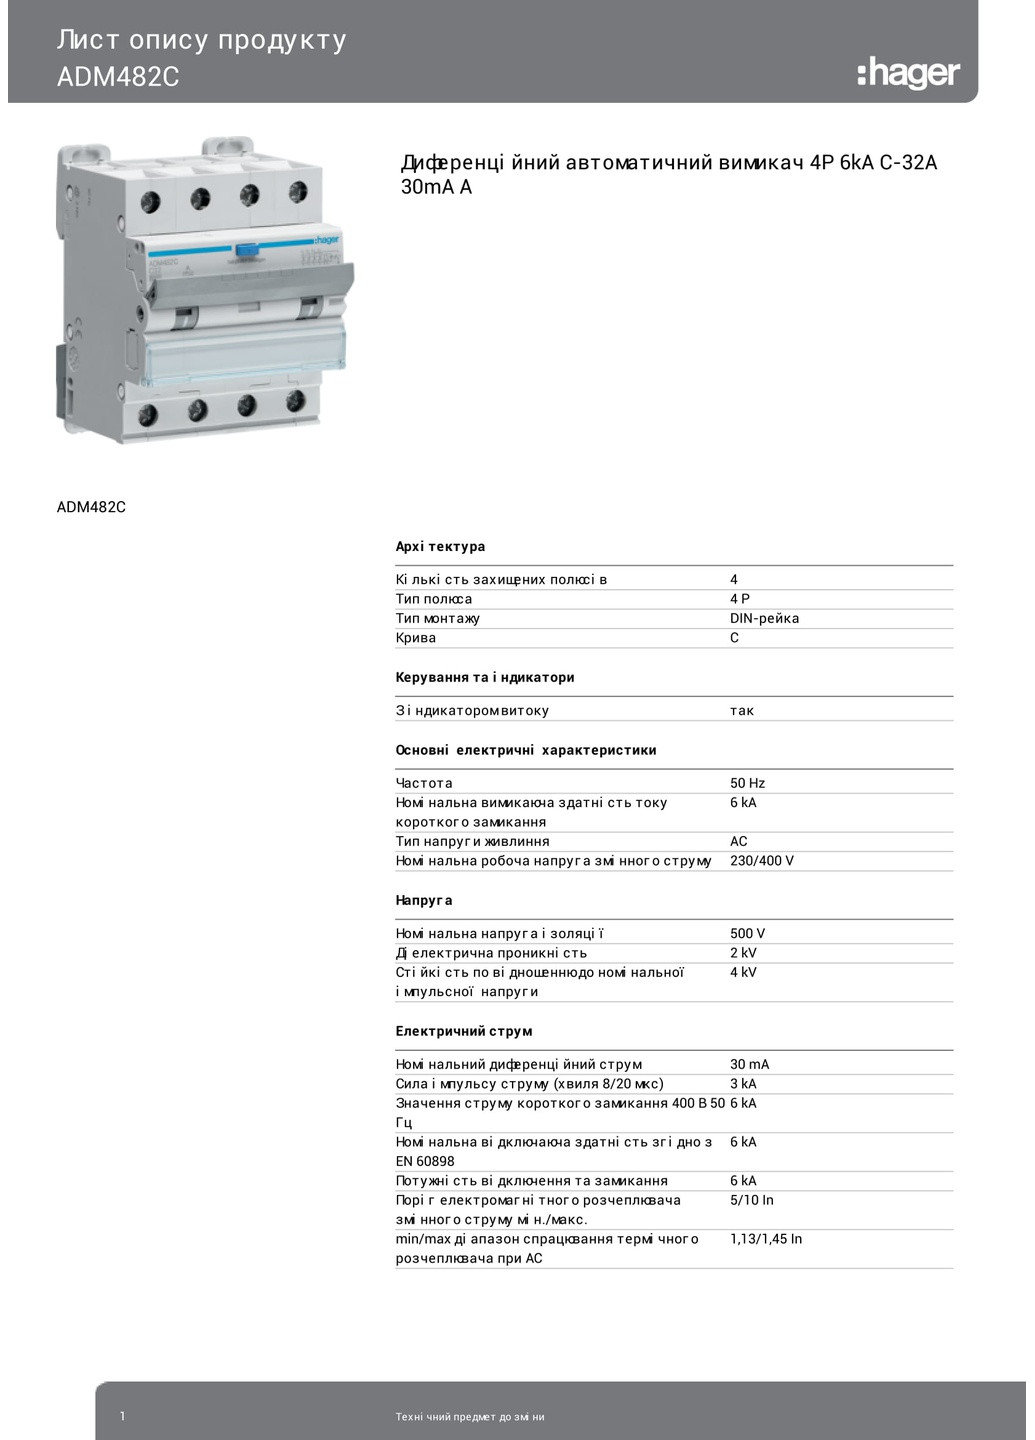 Диференціальний автоматичний вимикач ADM482C 4P 6кА C32A 30mA тип A дифавтомат (3327) Hager (265535537)